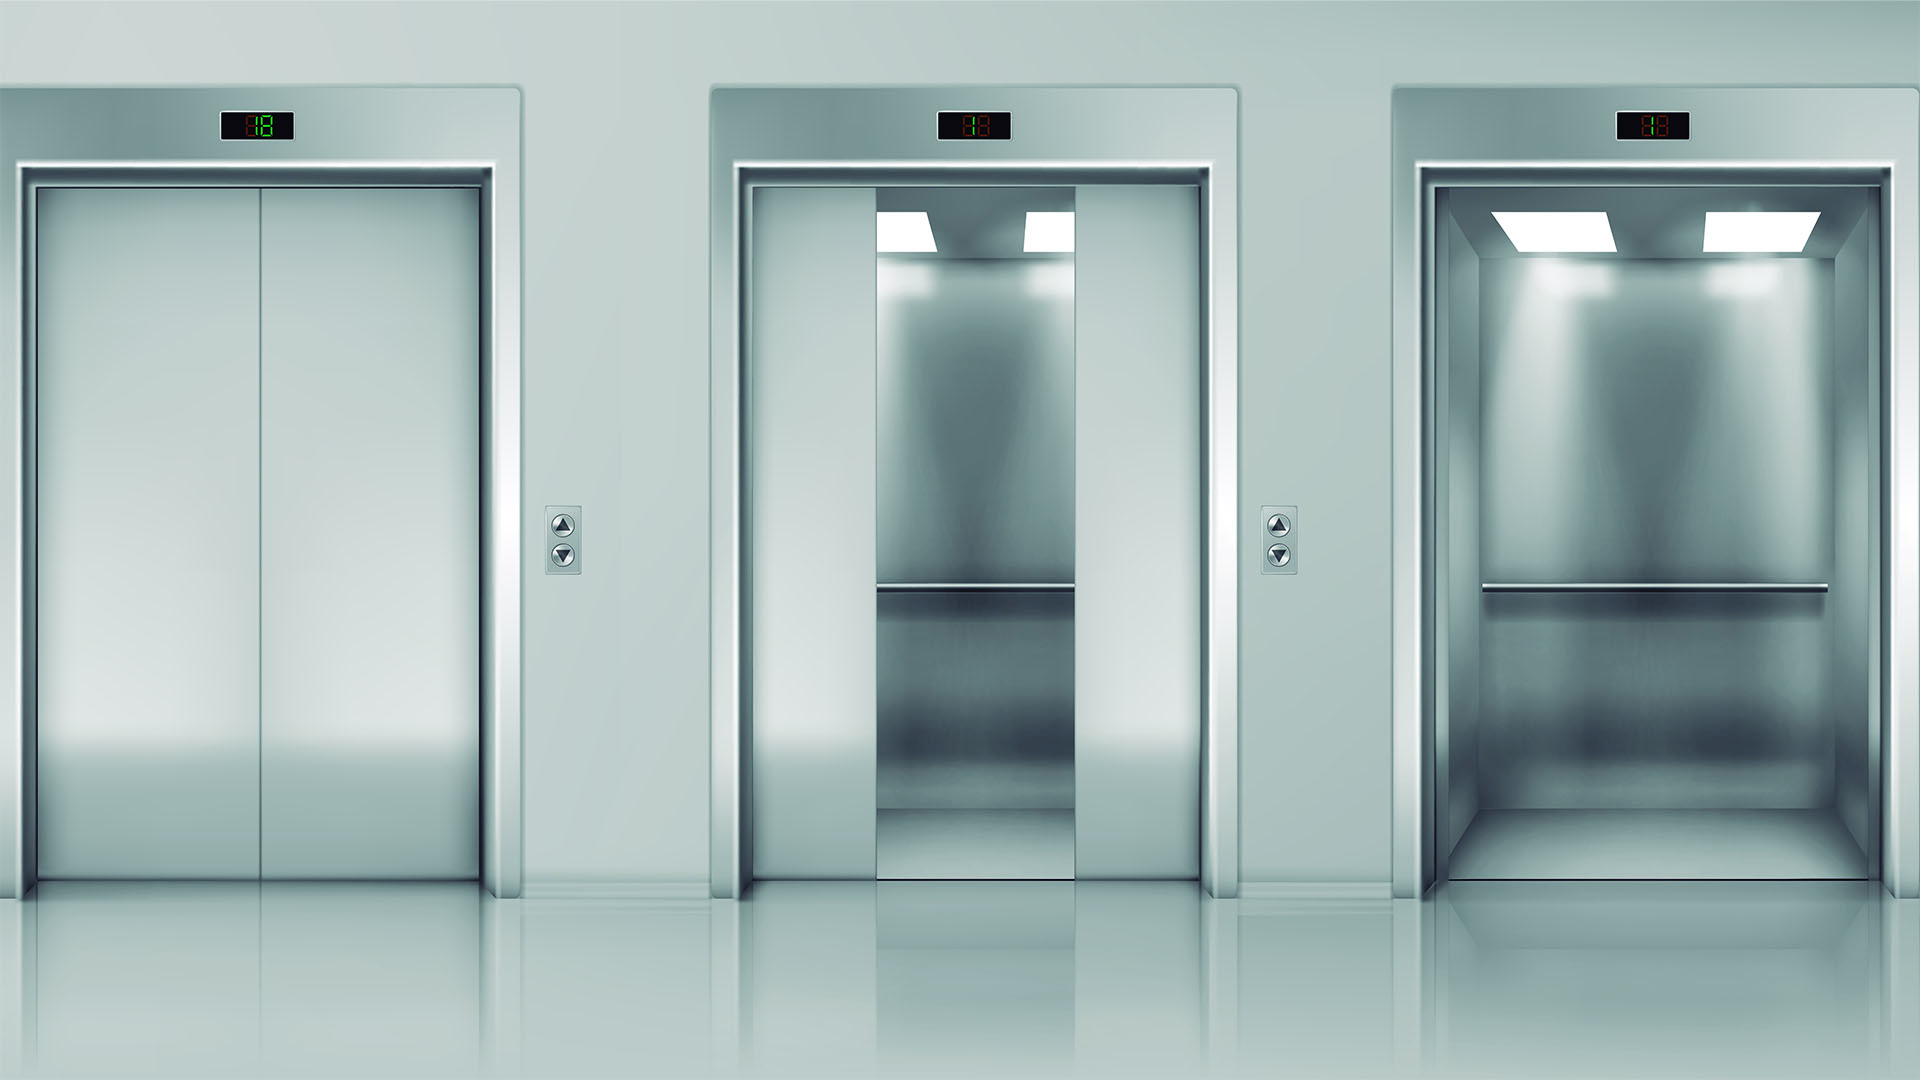 Los ascensores son lugares de alta exposición al virus SARS-CoV-2 (Shutterstock)